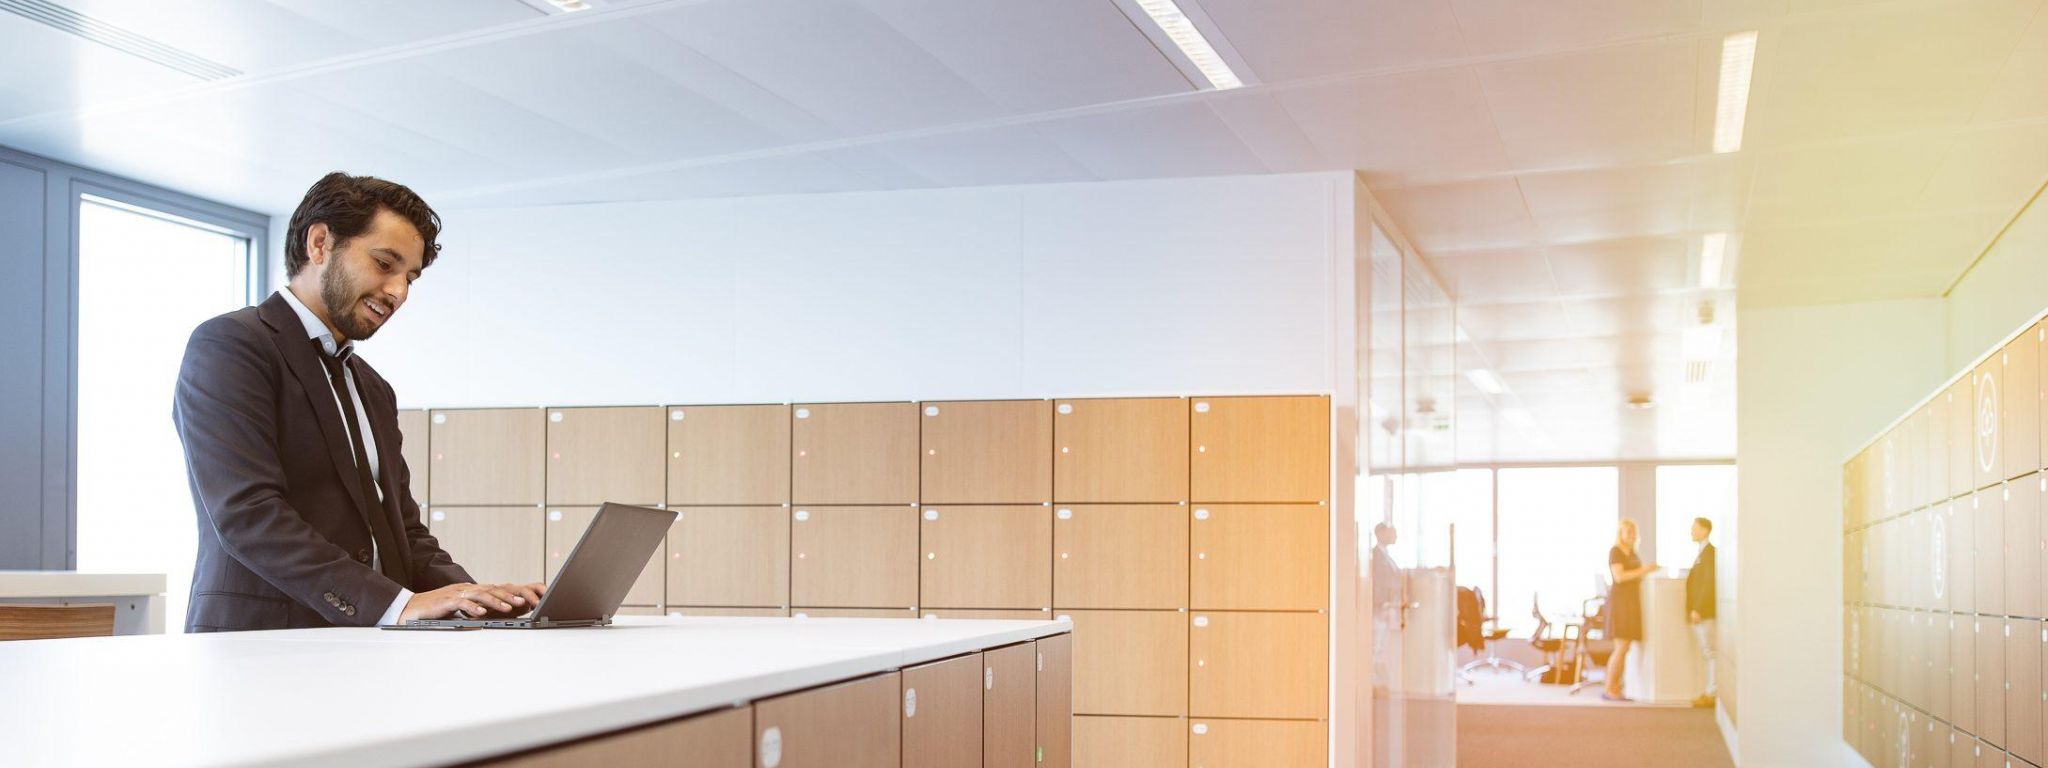 Encourager l'utilisation dynamique des lieux de travail avec un système de gestion intelligent des casiers